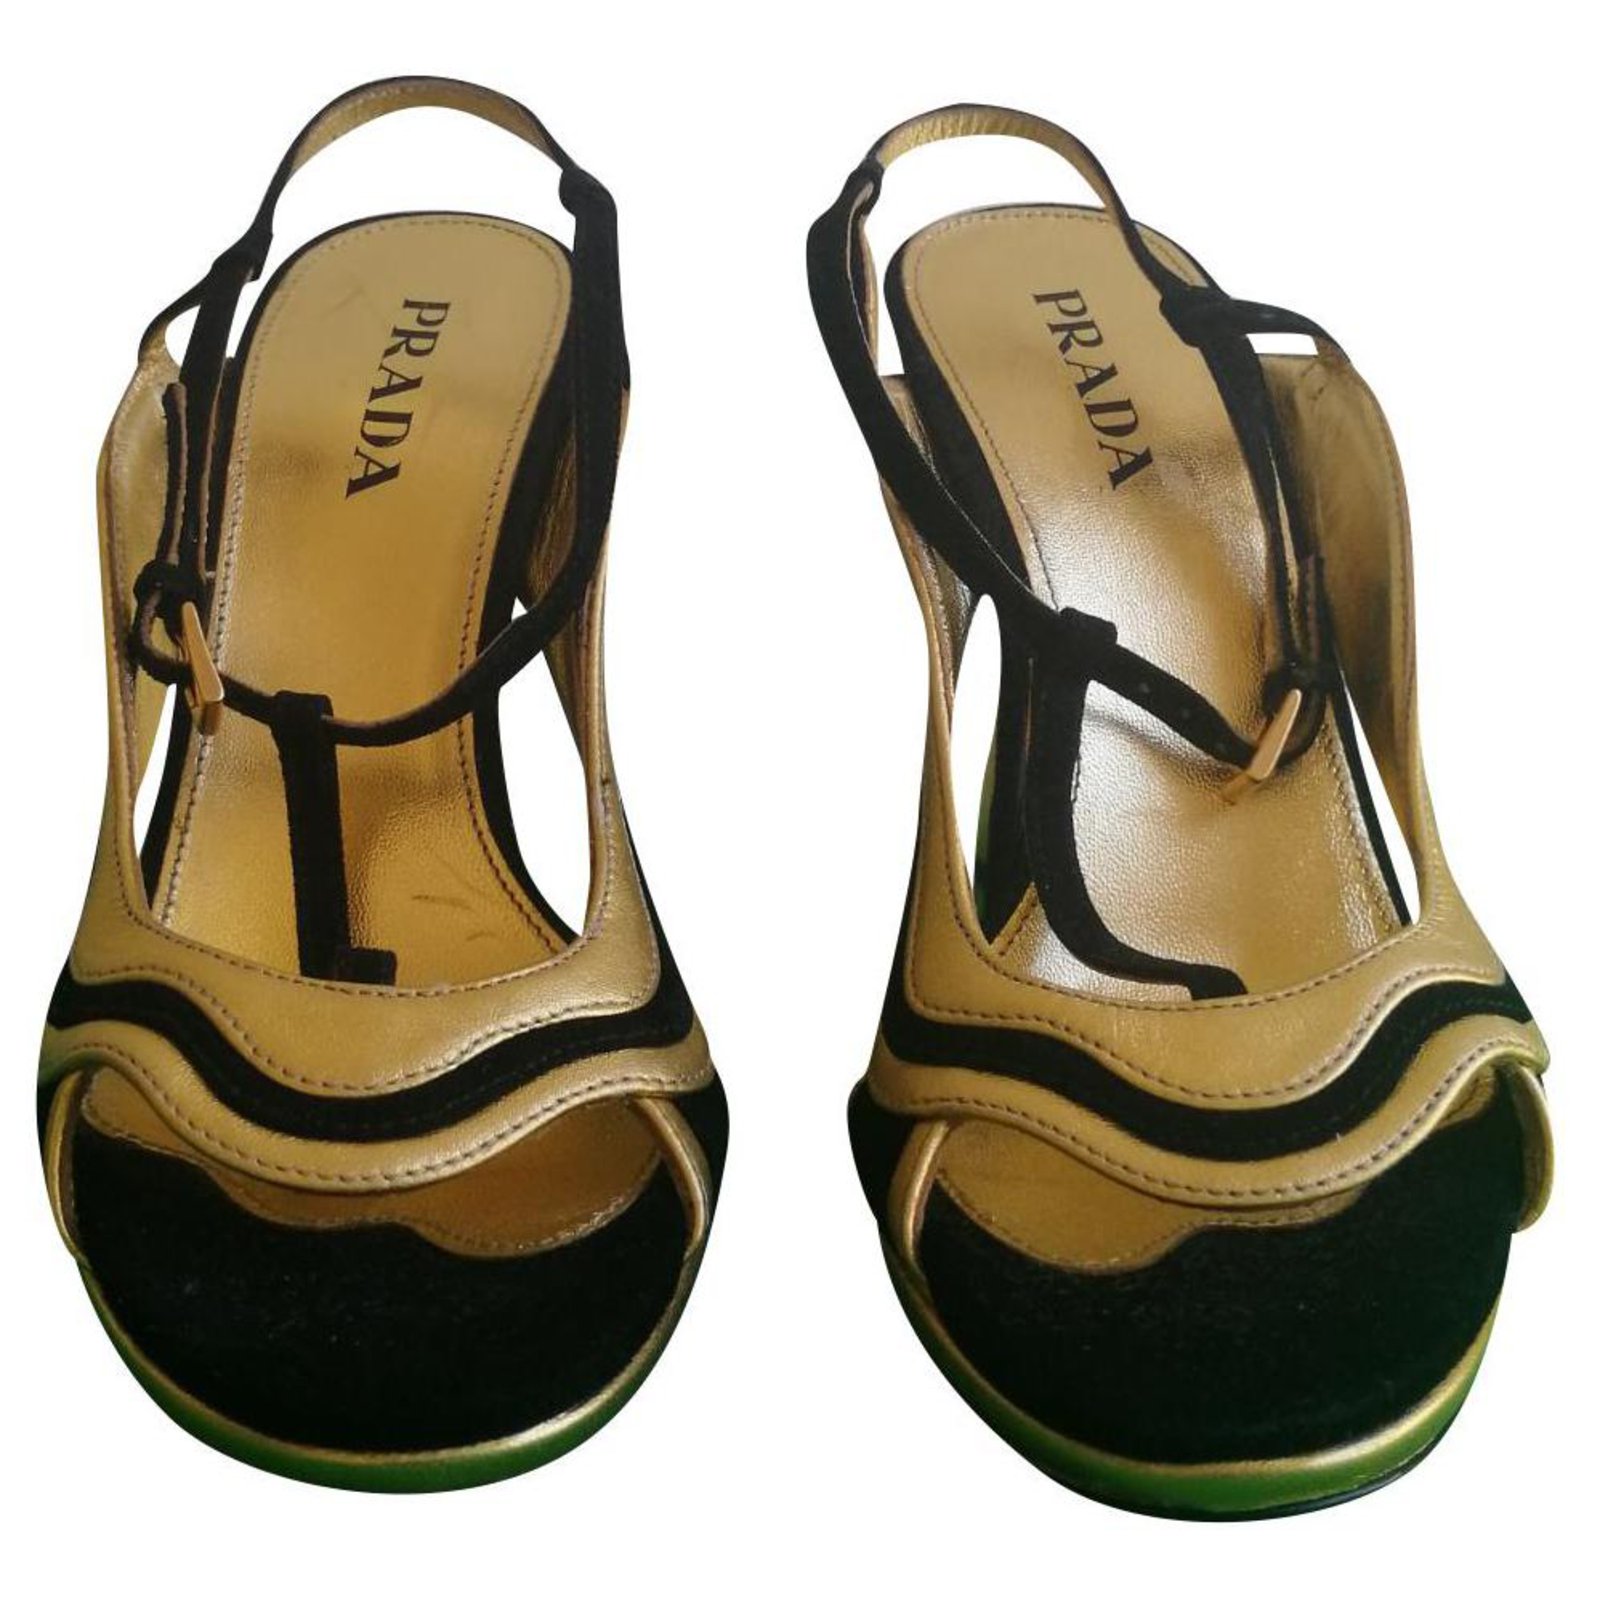 prada sandals gold